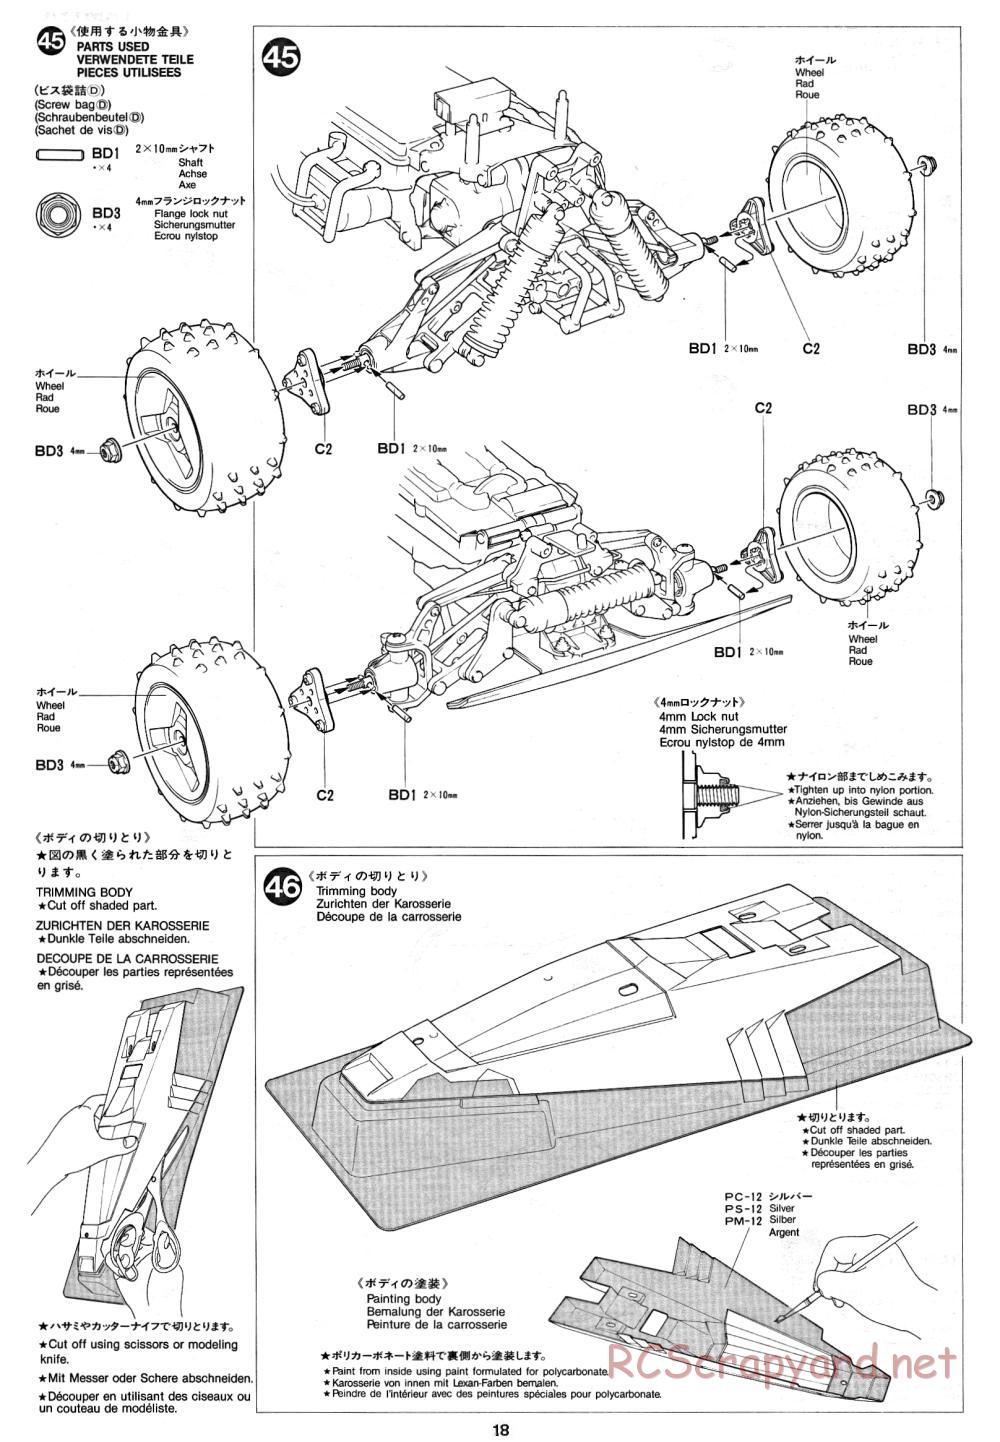 Tamiya - Thunder Dragon - 58073 - Manual - Page 18